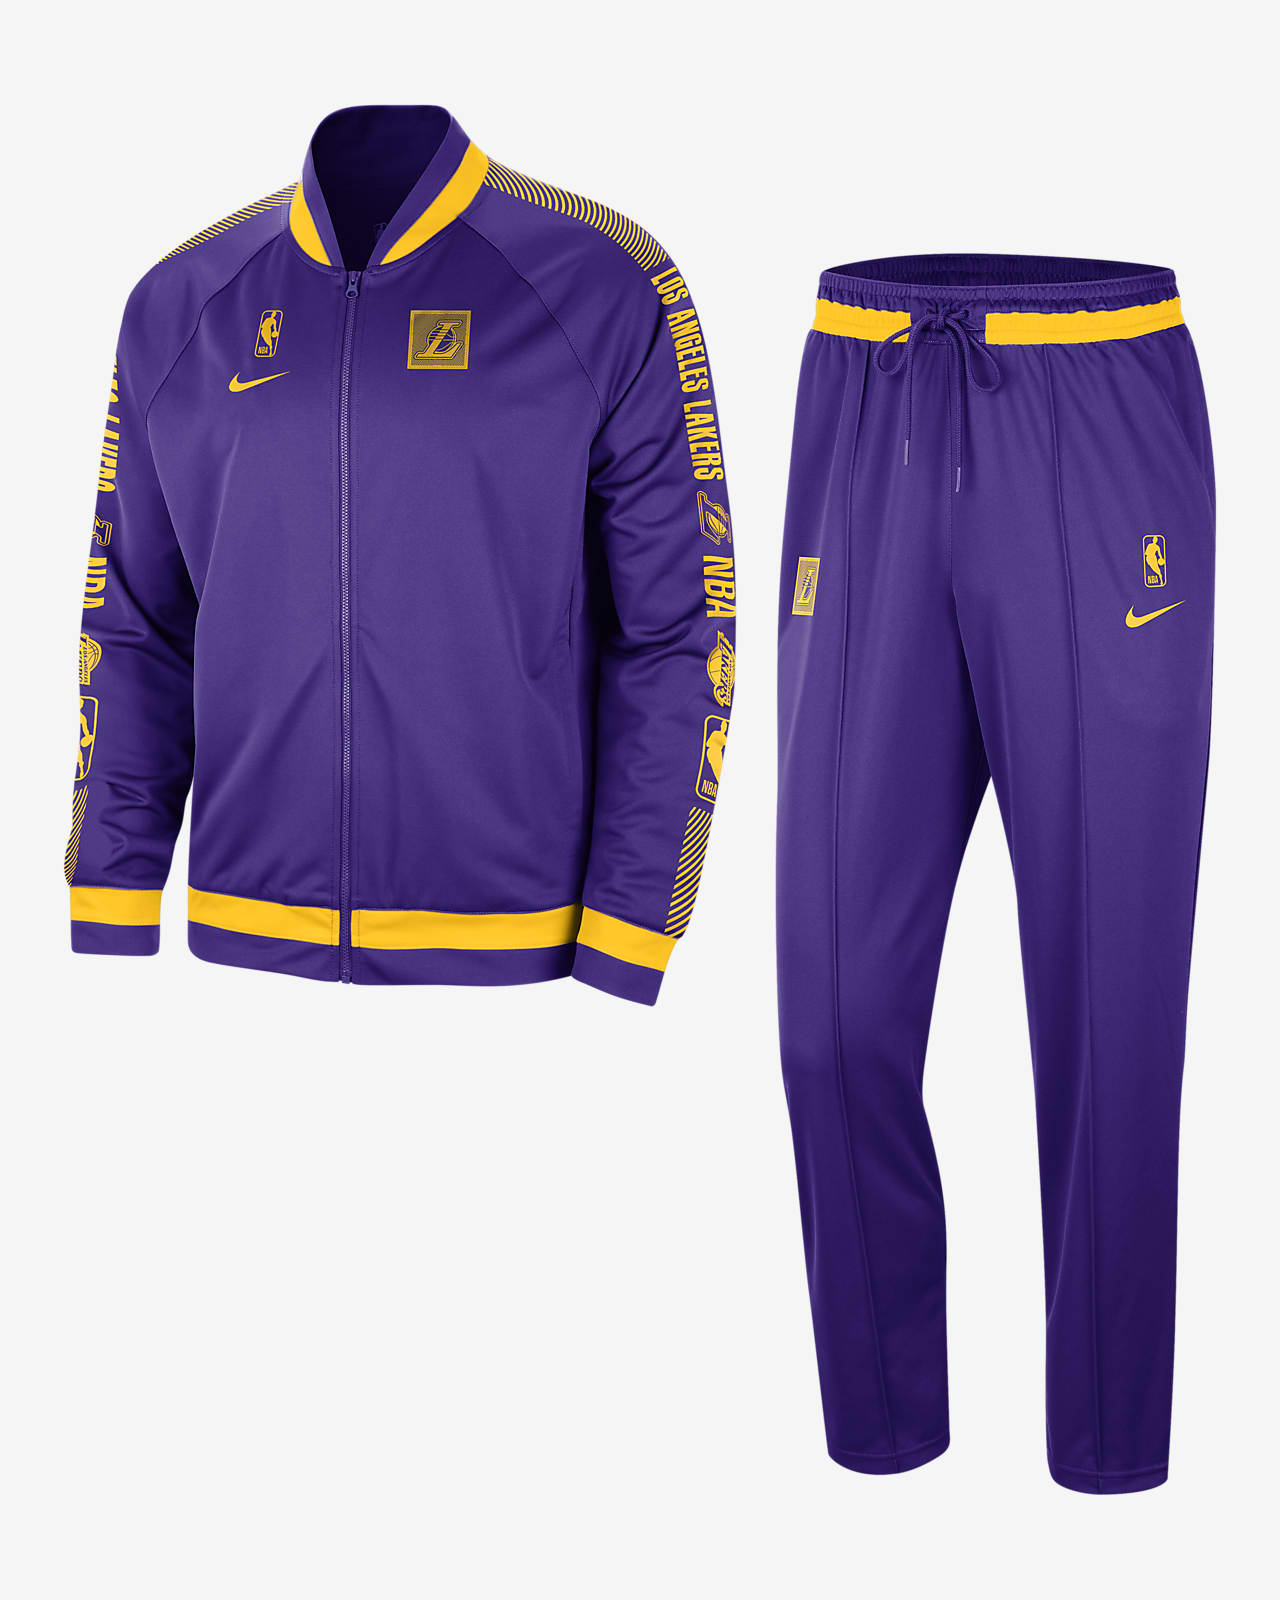 Ανδρική φόρμα Nike Dri-FIT NBA Λος Άντζελες Λέικερς Starting 5